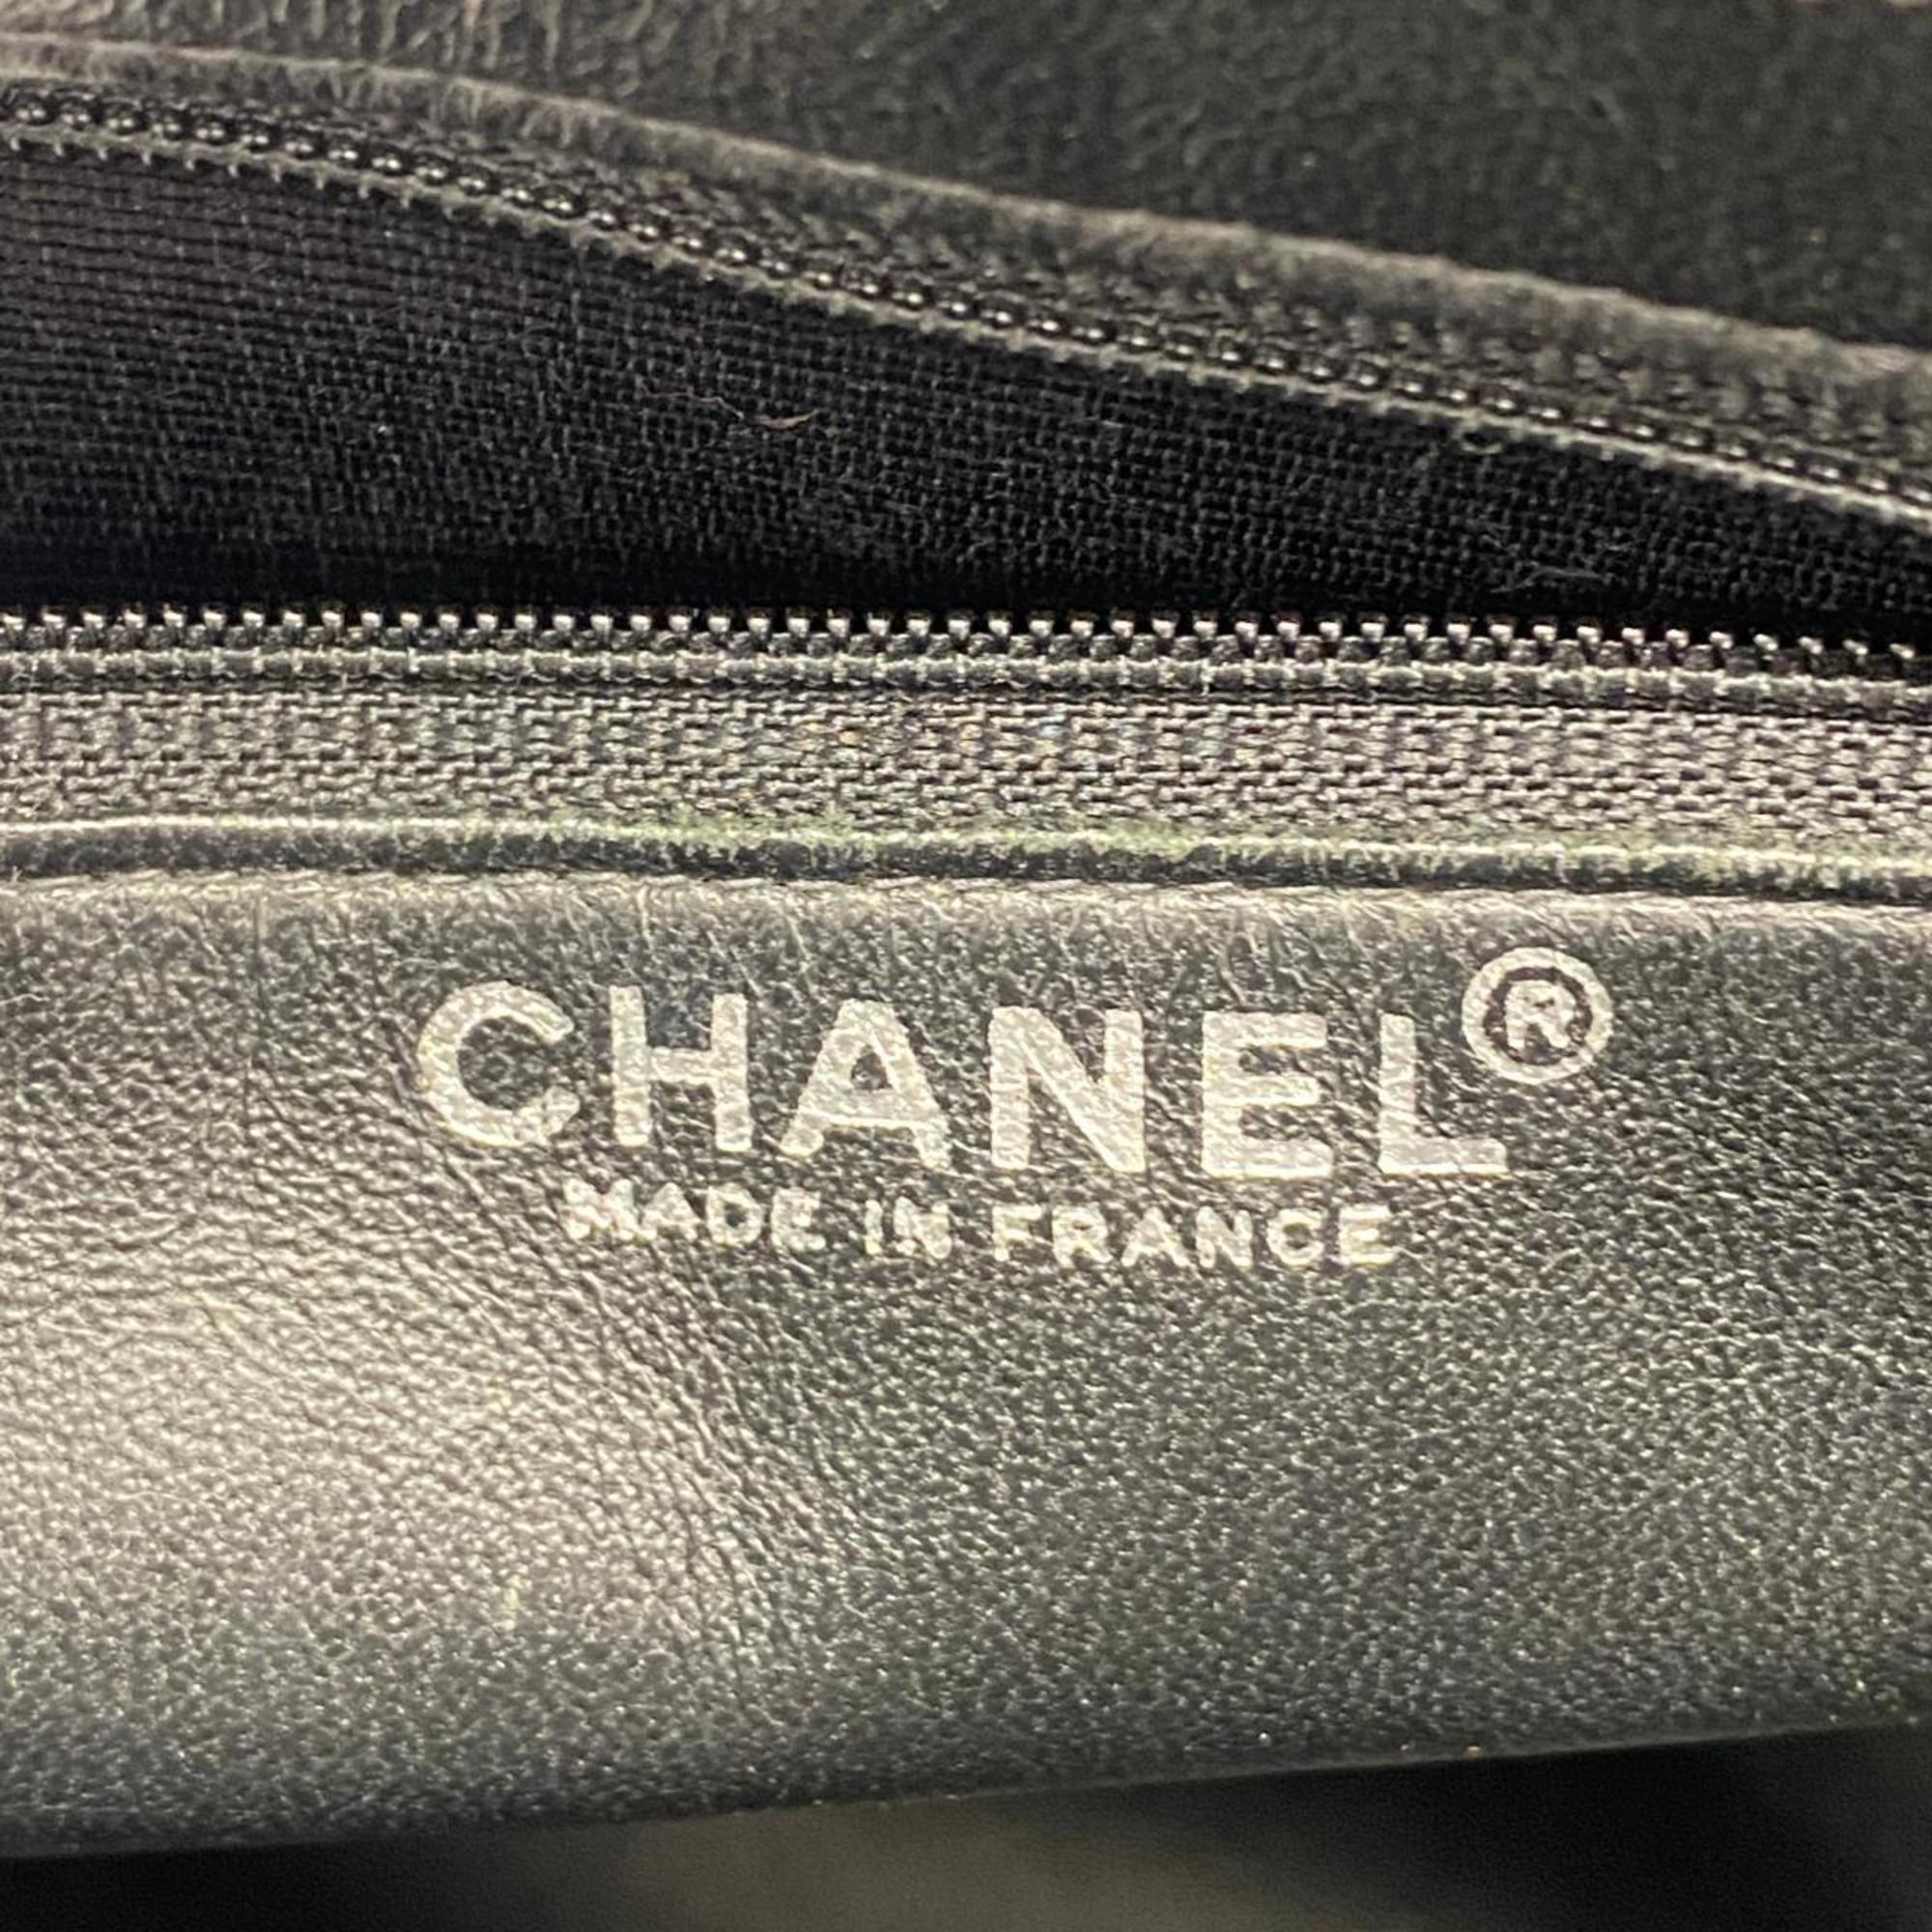 シャネル(Chanel) シャネル トートバッグ 復刻トート キャビアスキン ブラック  レディース